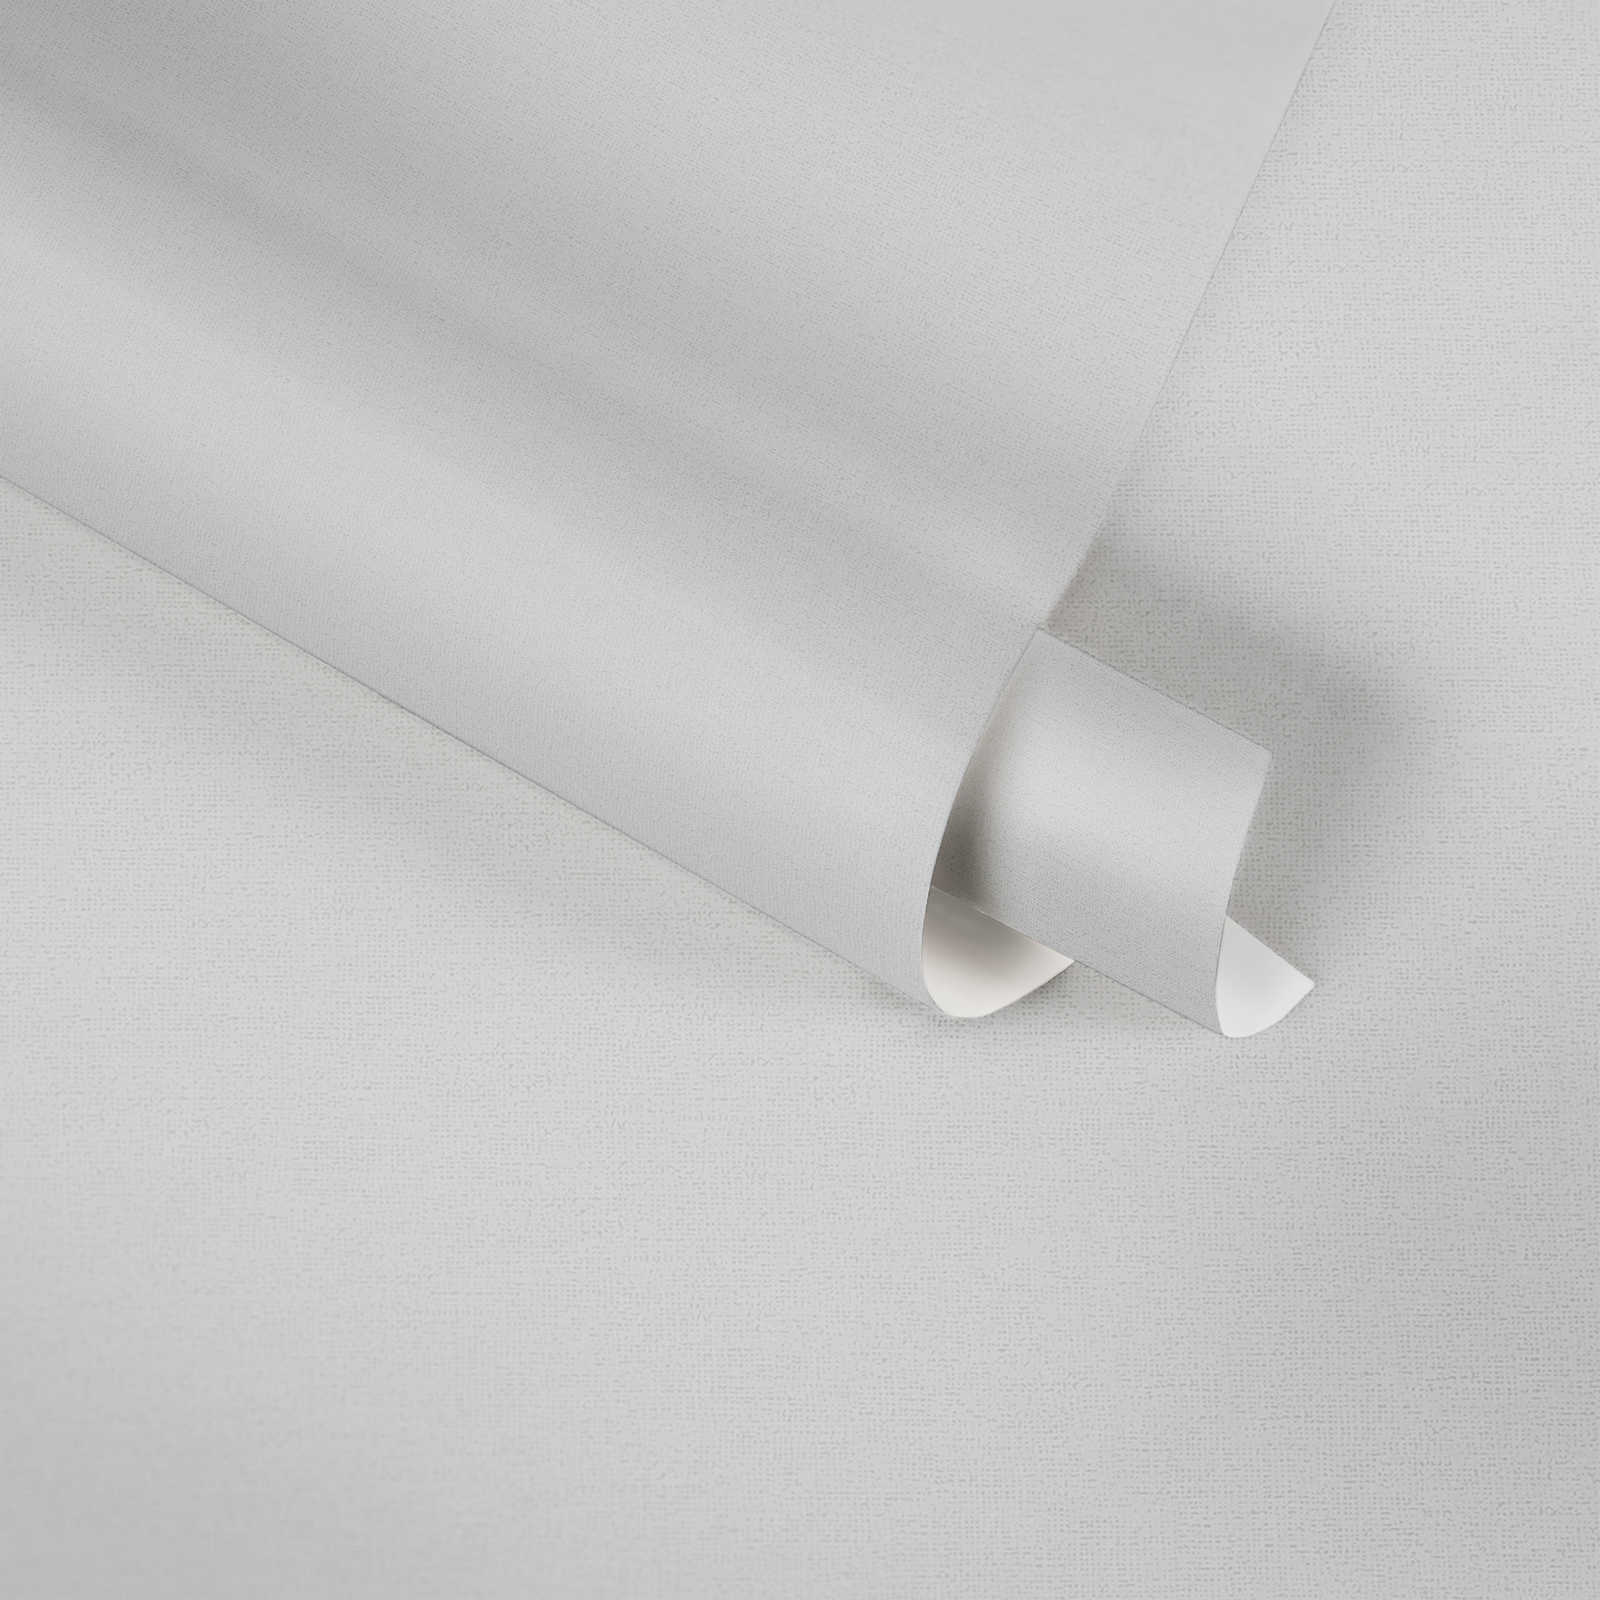             Carta da parati in tessuto non tessuto grigio di MICHASLKY, tinta unita con struttura tessile
        